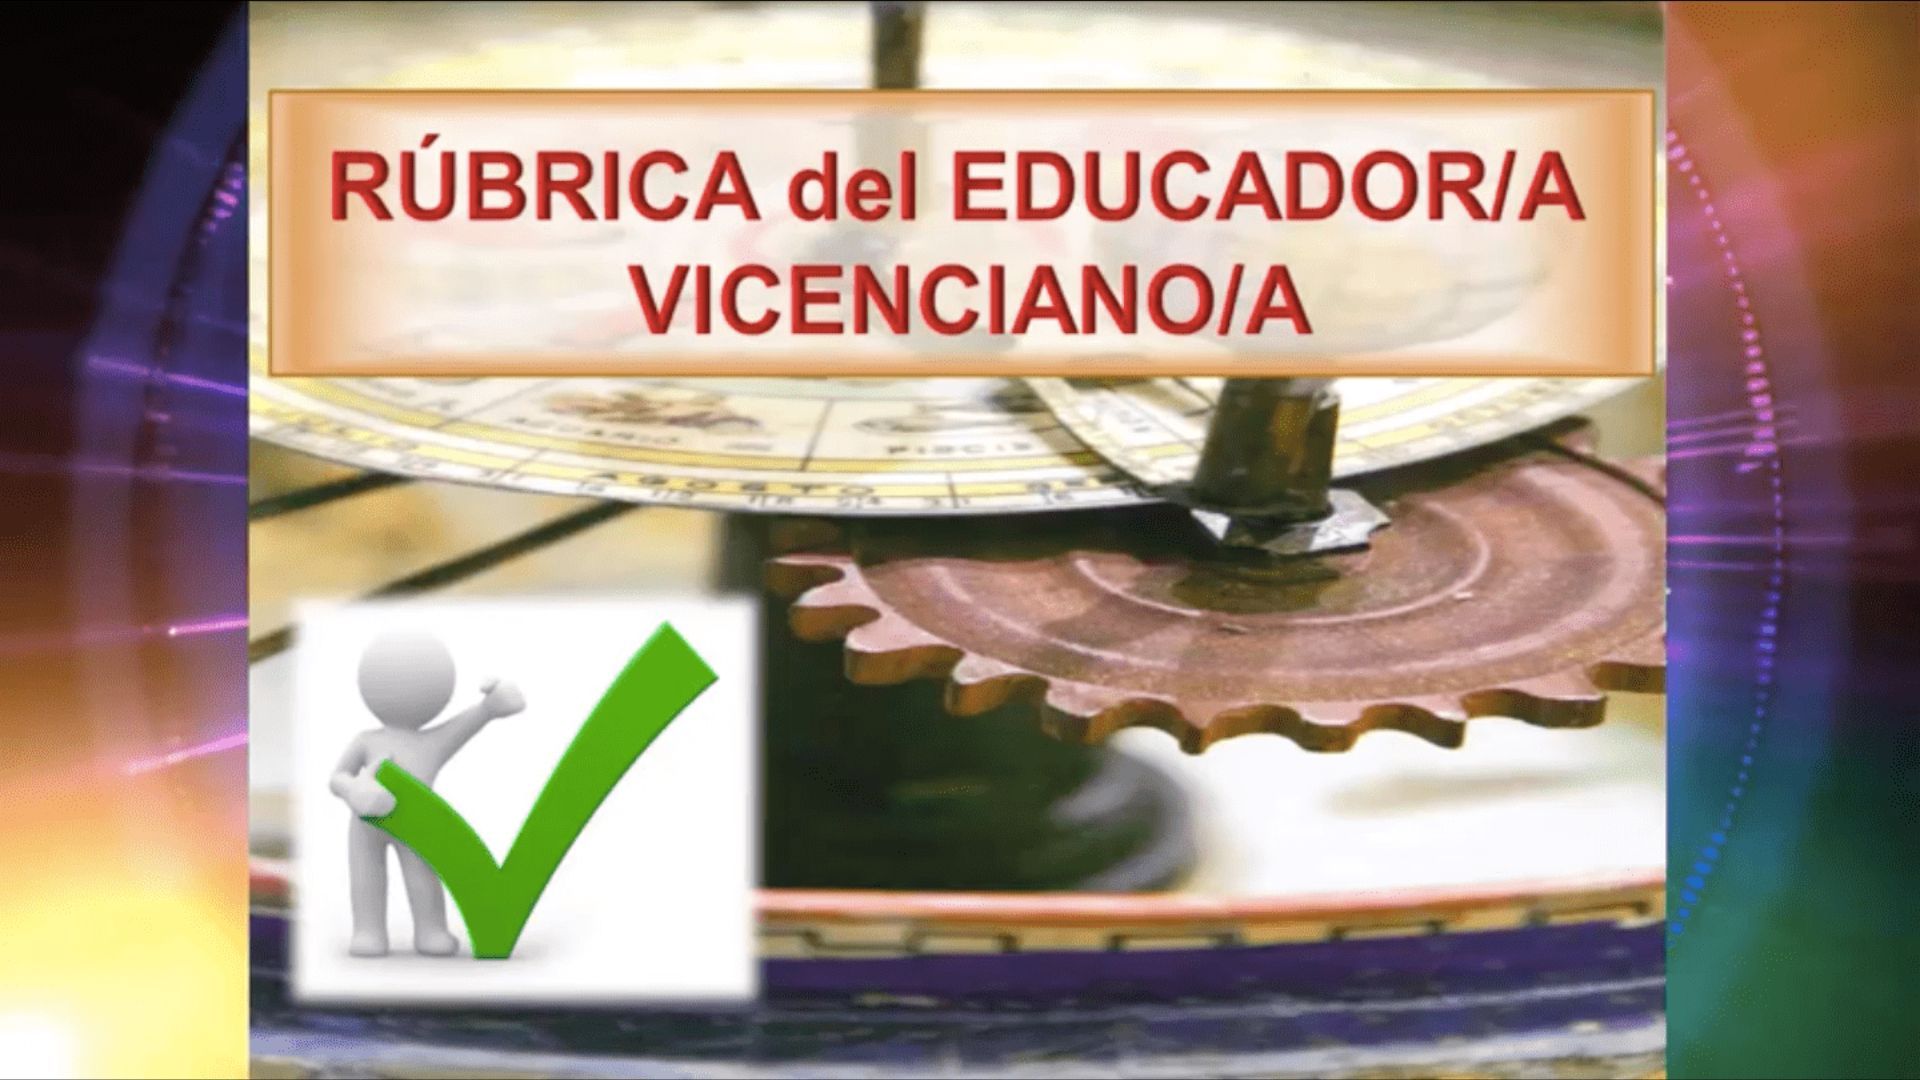 Portfolio y rúbrica del educador vicenciano